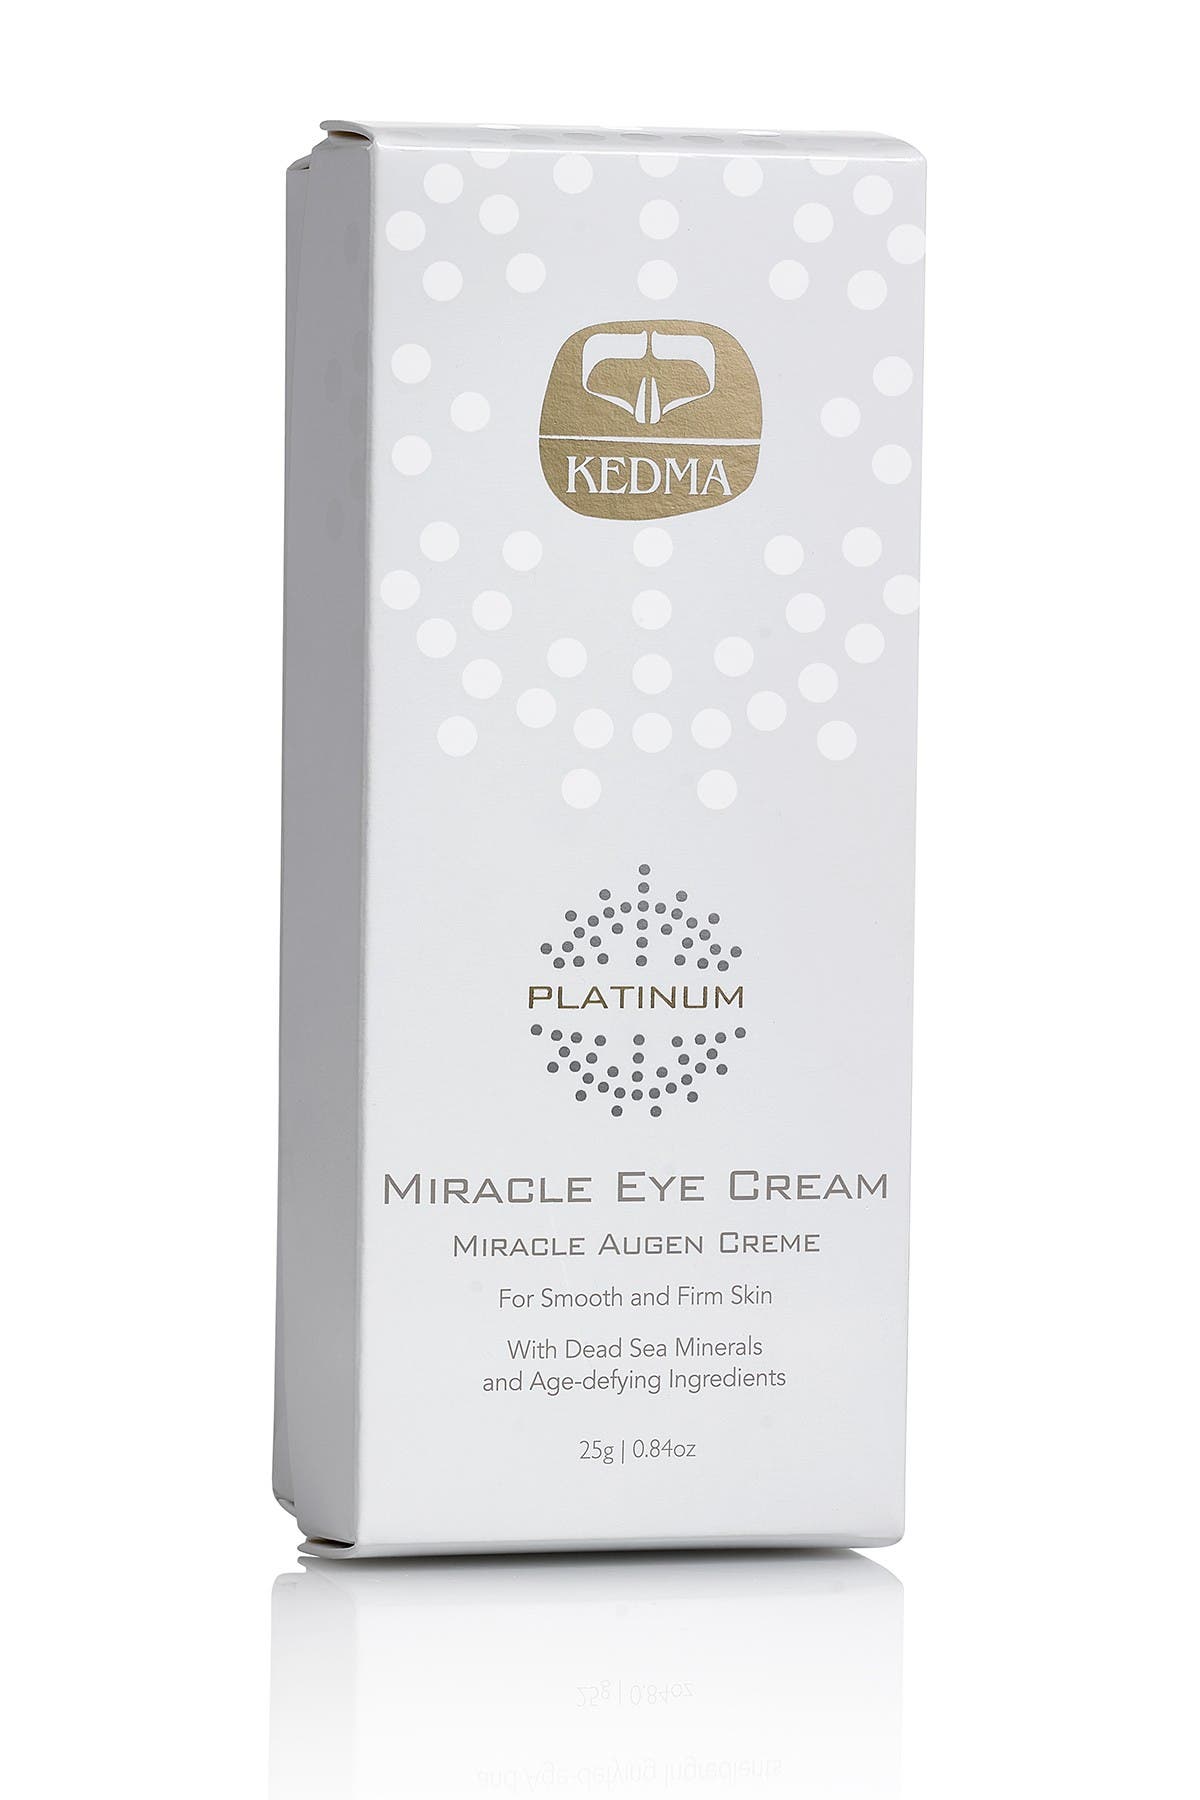 Kedma Miracle Eye Cream